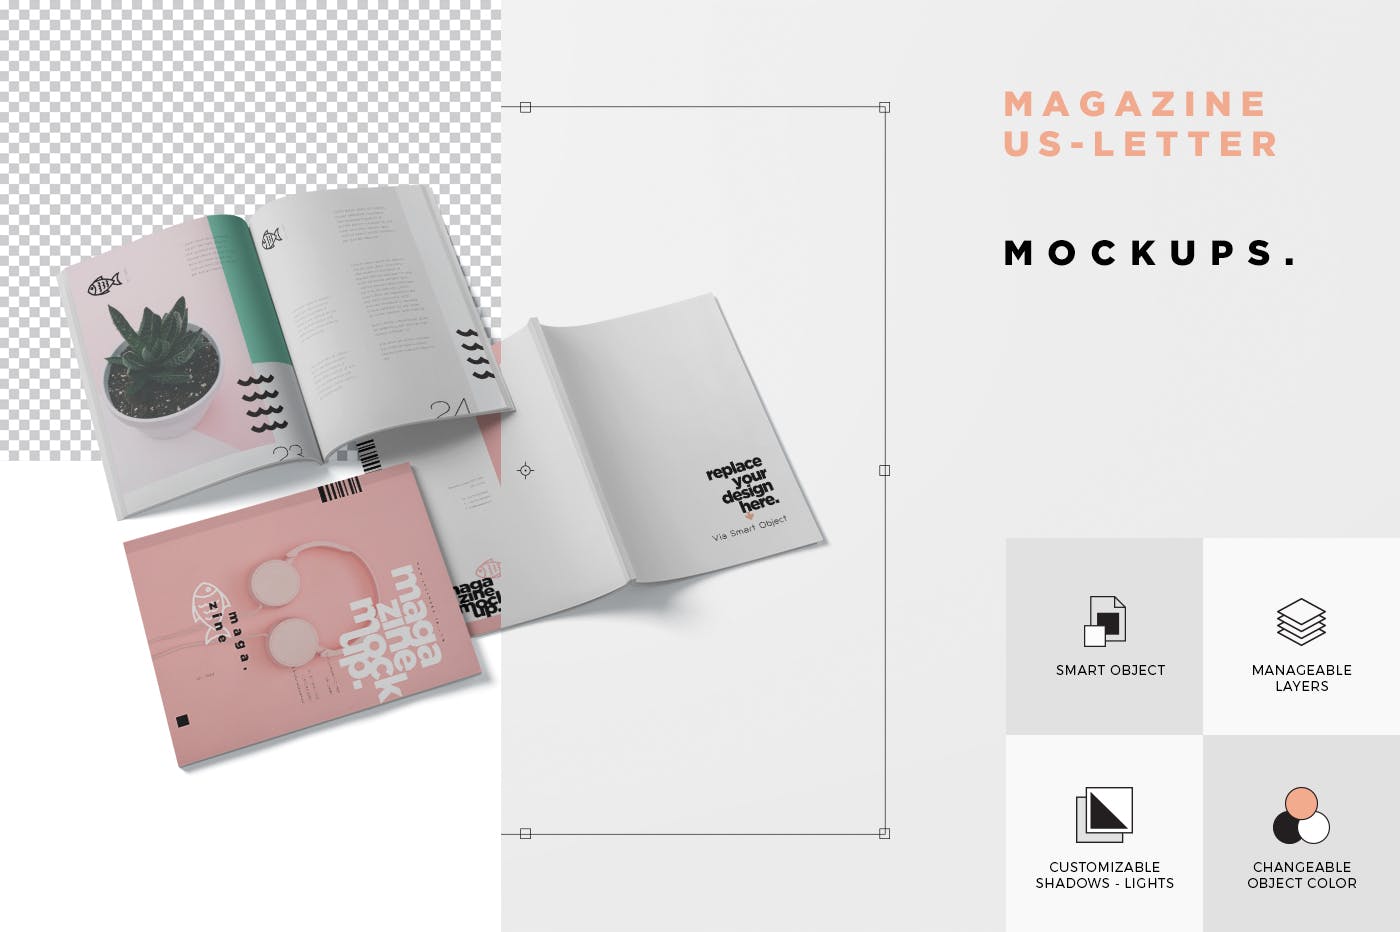 美国信纸尺寸规格杂志封面&内页排版设计效果图样机 Magazine Mockup – US Letter 8.5×11 Inch Size插图(5)